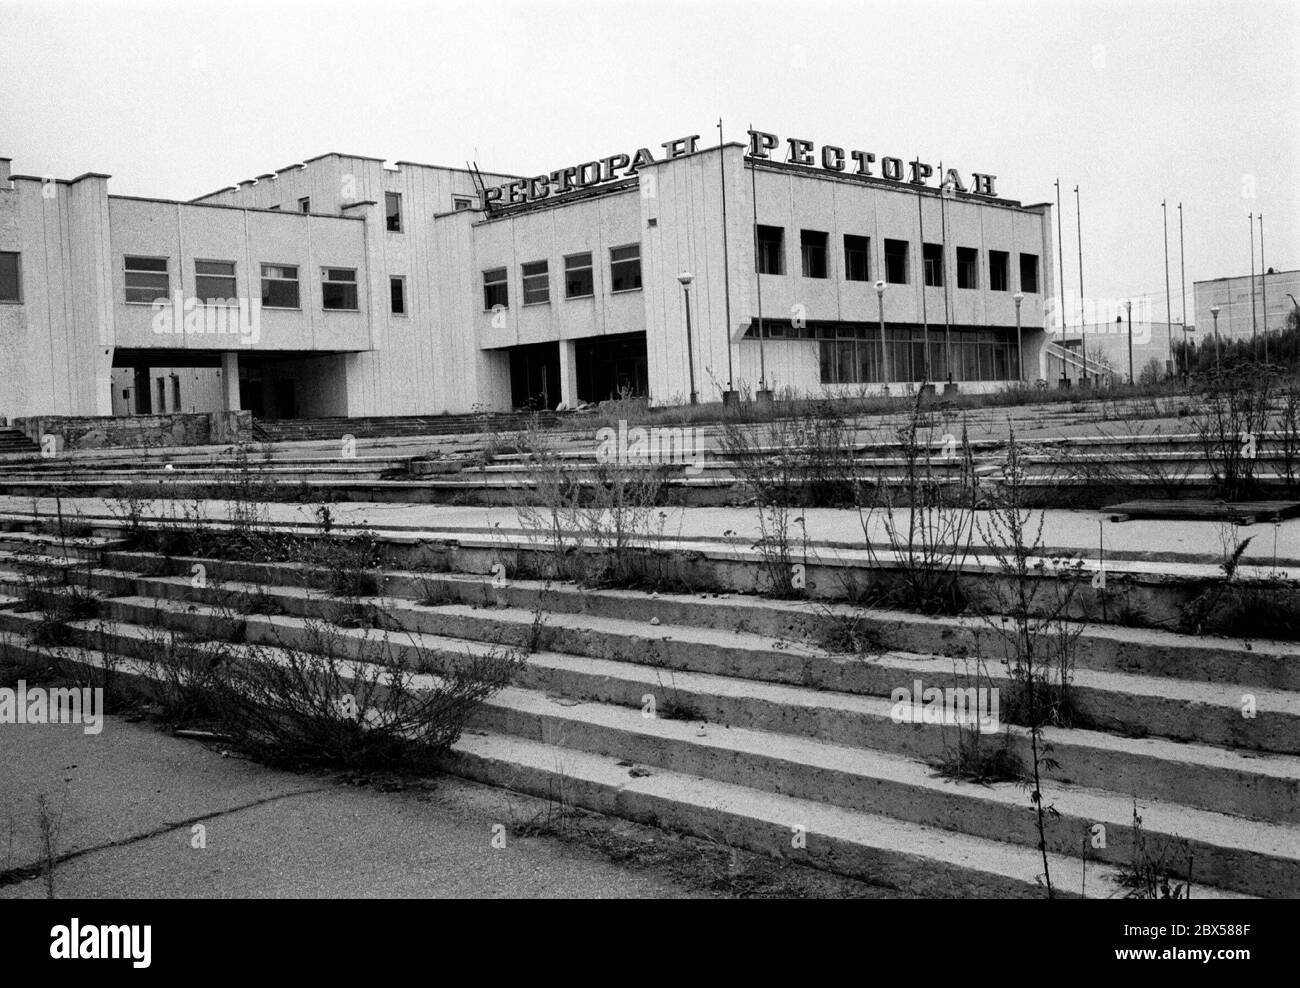 Ristorante nel centro di Pripyat, la città più vicina alla centrale nucleare di Chernobyl. Non è stato fino a 36 ore dopo l'incidente del reattore che la città è stata evacuata, lasciando i residenti convinti che potrebbero tornare a casa presto. Oggi, la città fantasma si trova nel mezzo della zona inabitabile di 30 km intorno al reattore. Foto Stock